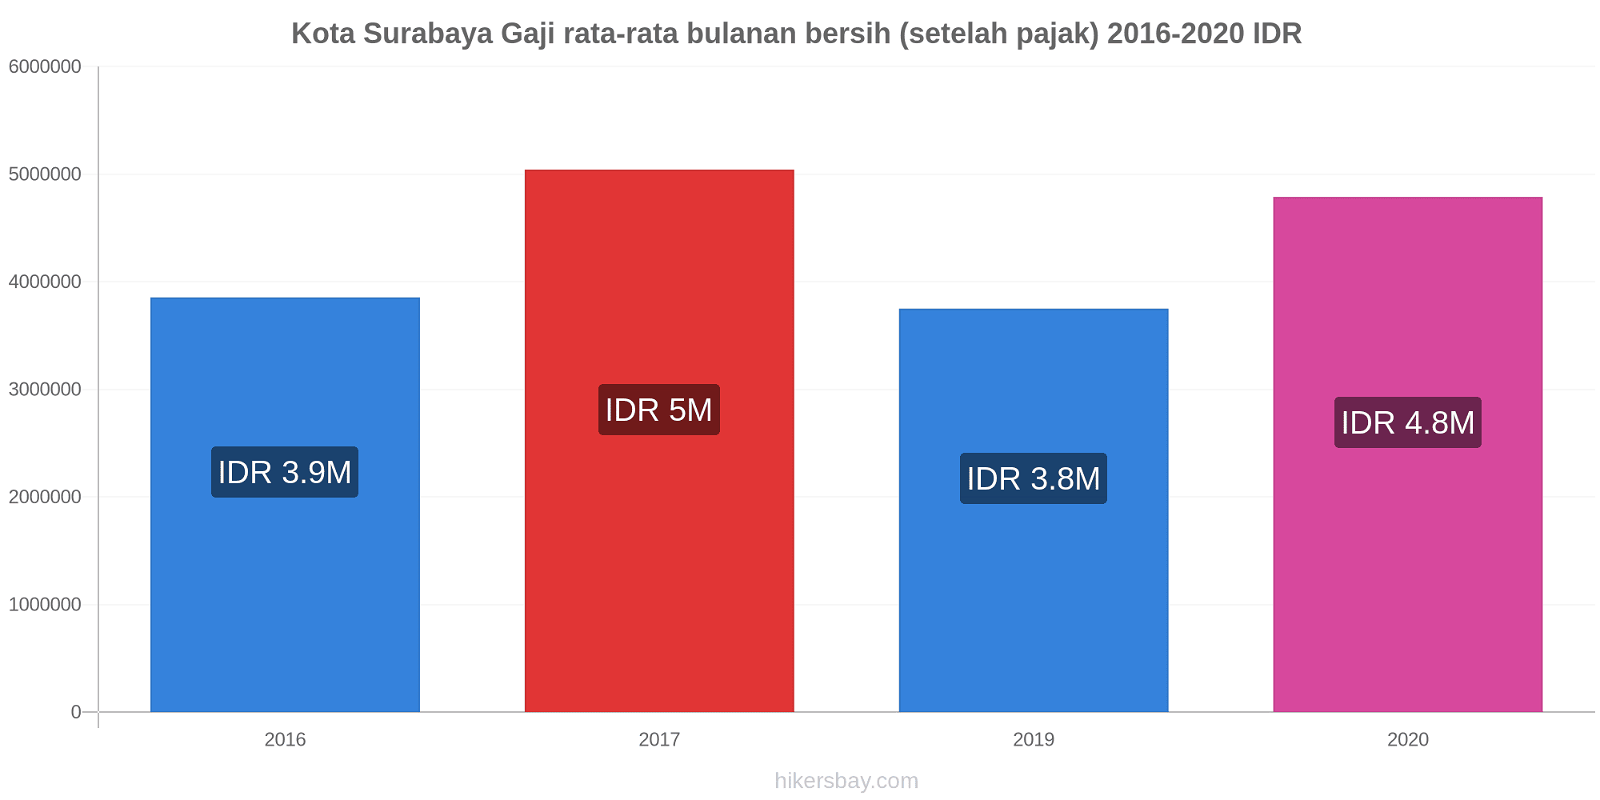 Kota Surabaya perubahan harga Gaji rata-rata bulanan bersih (setelah pajak) hikersbay.com